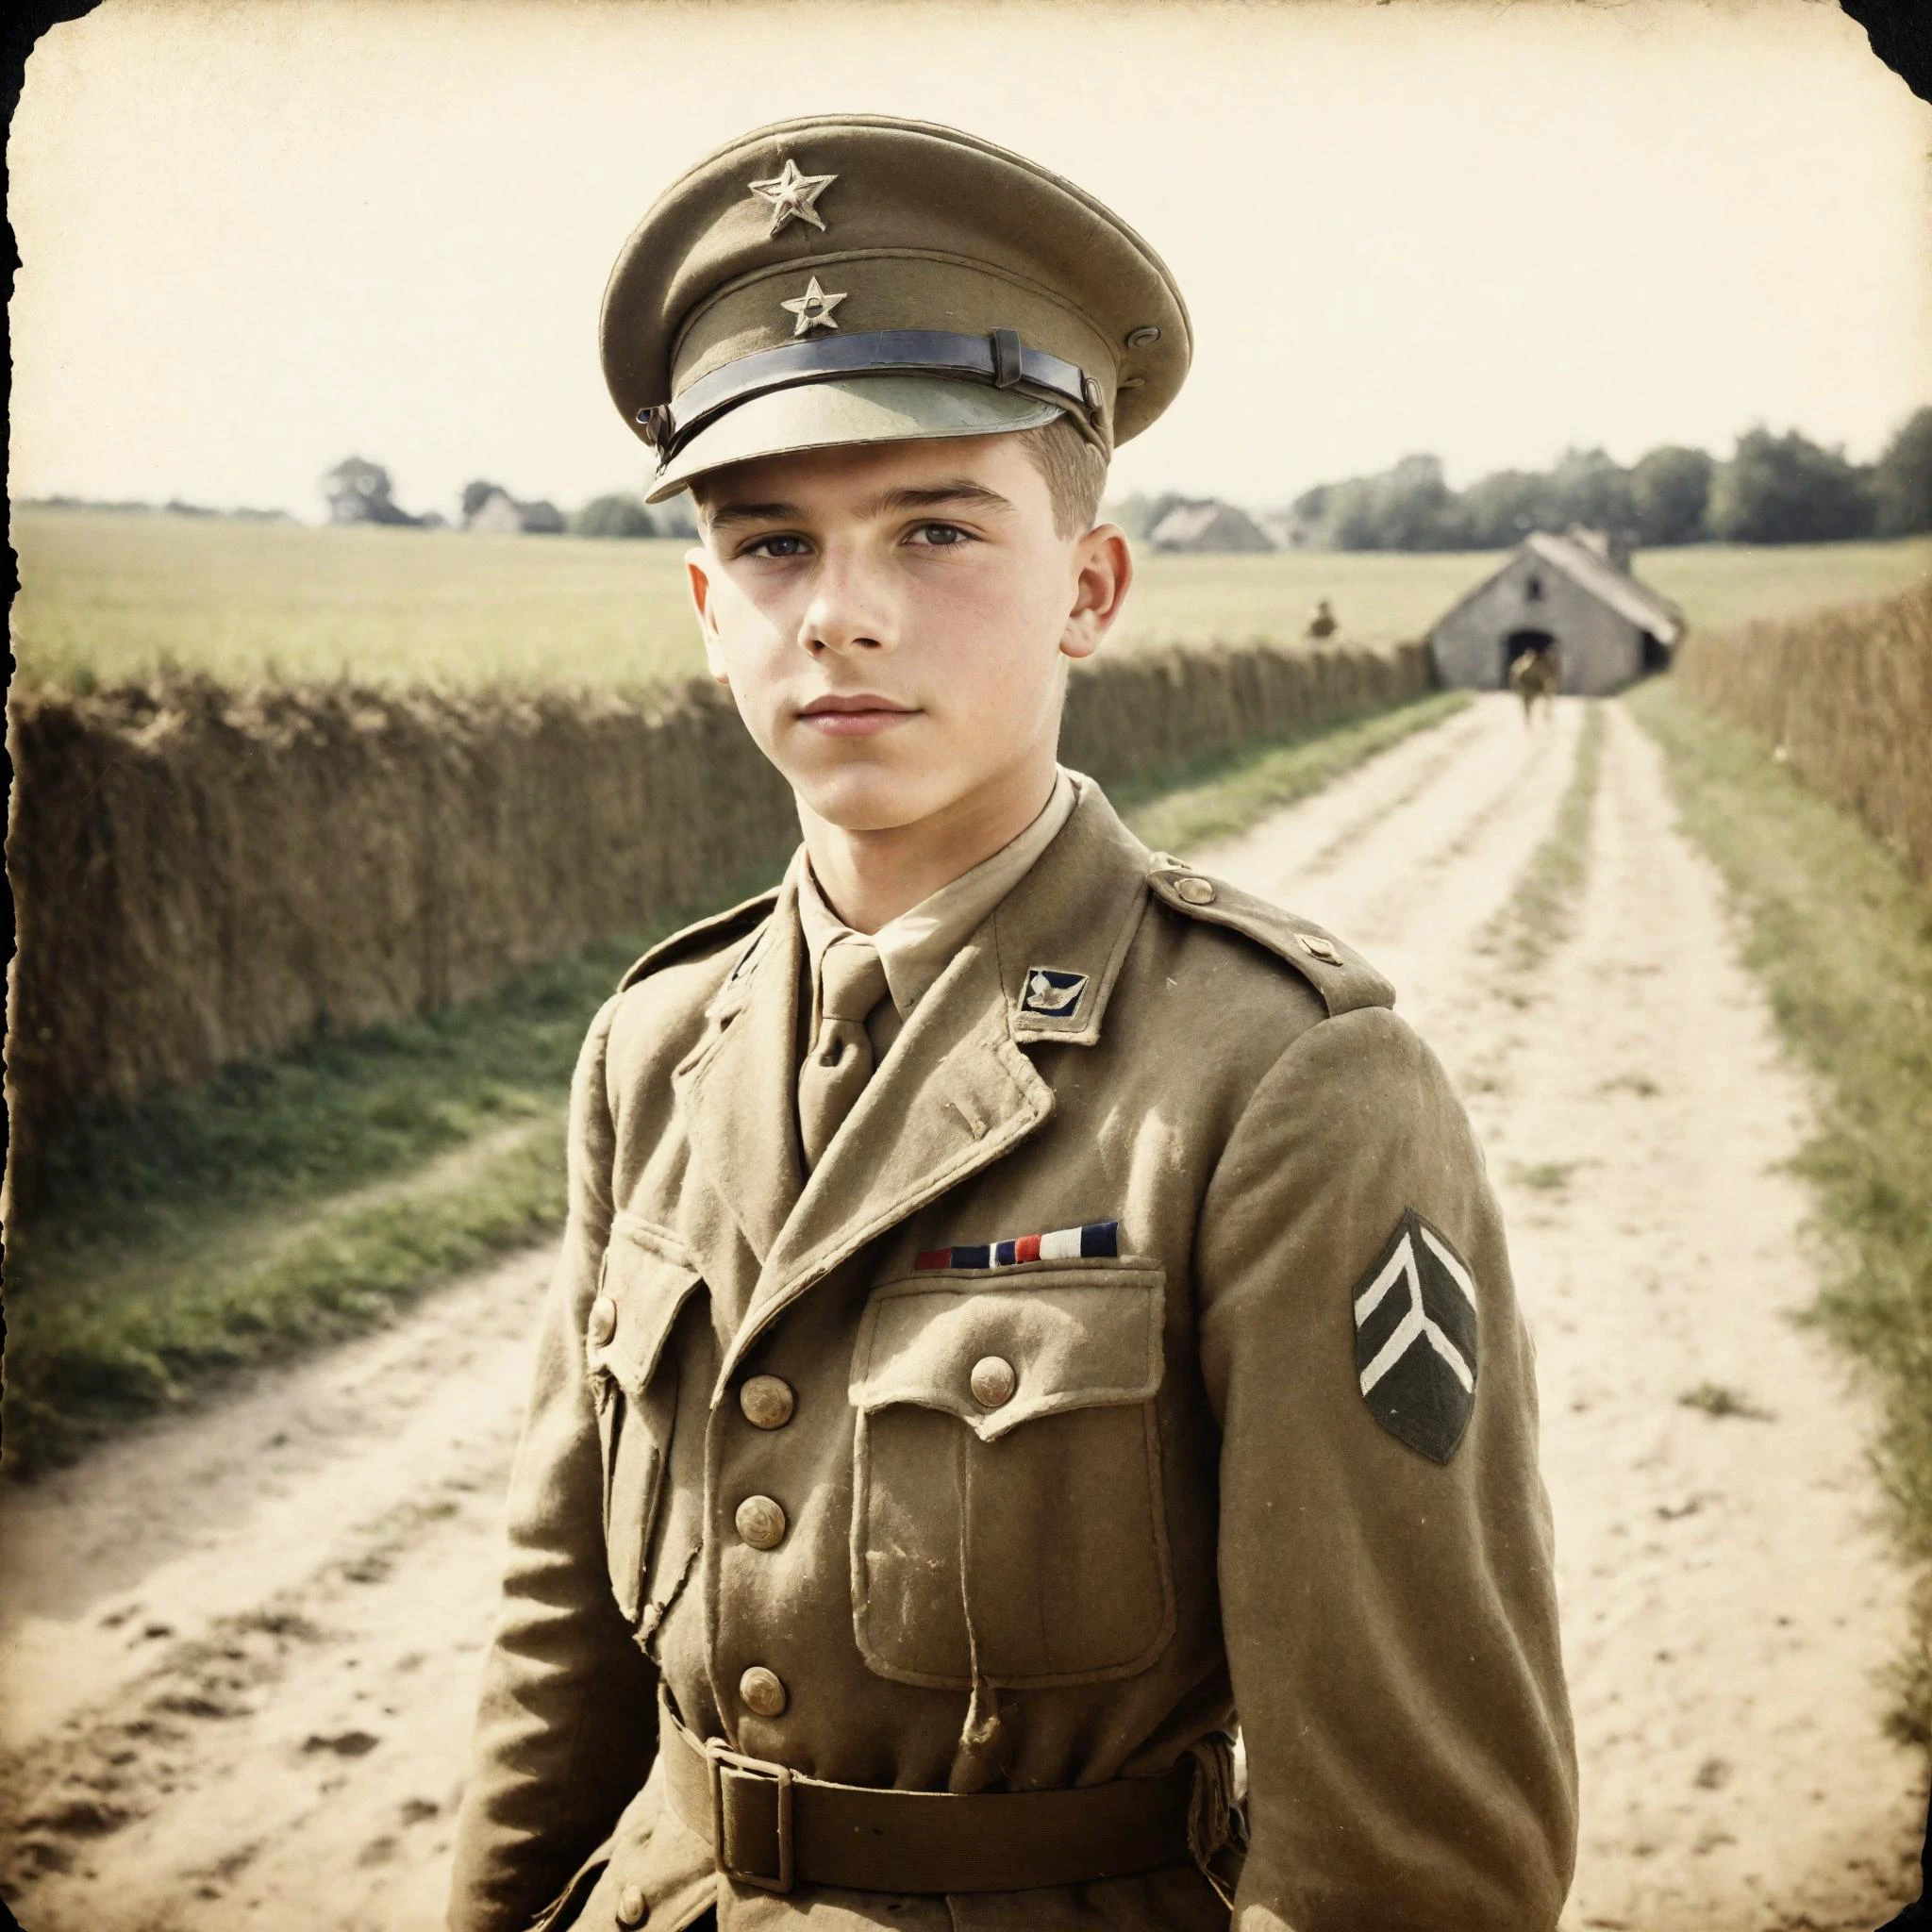 第二次世界大戦の10代の兵士のビンテージ写真, ノルマンディー, アメリカ歩兵の服を着ている, 自然光, フィルムグレイン, 傷んだエッジ, ビネット